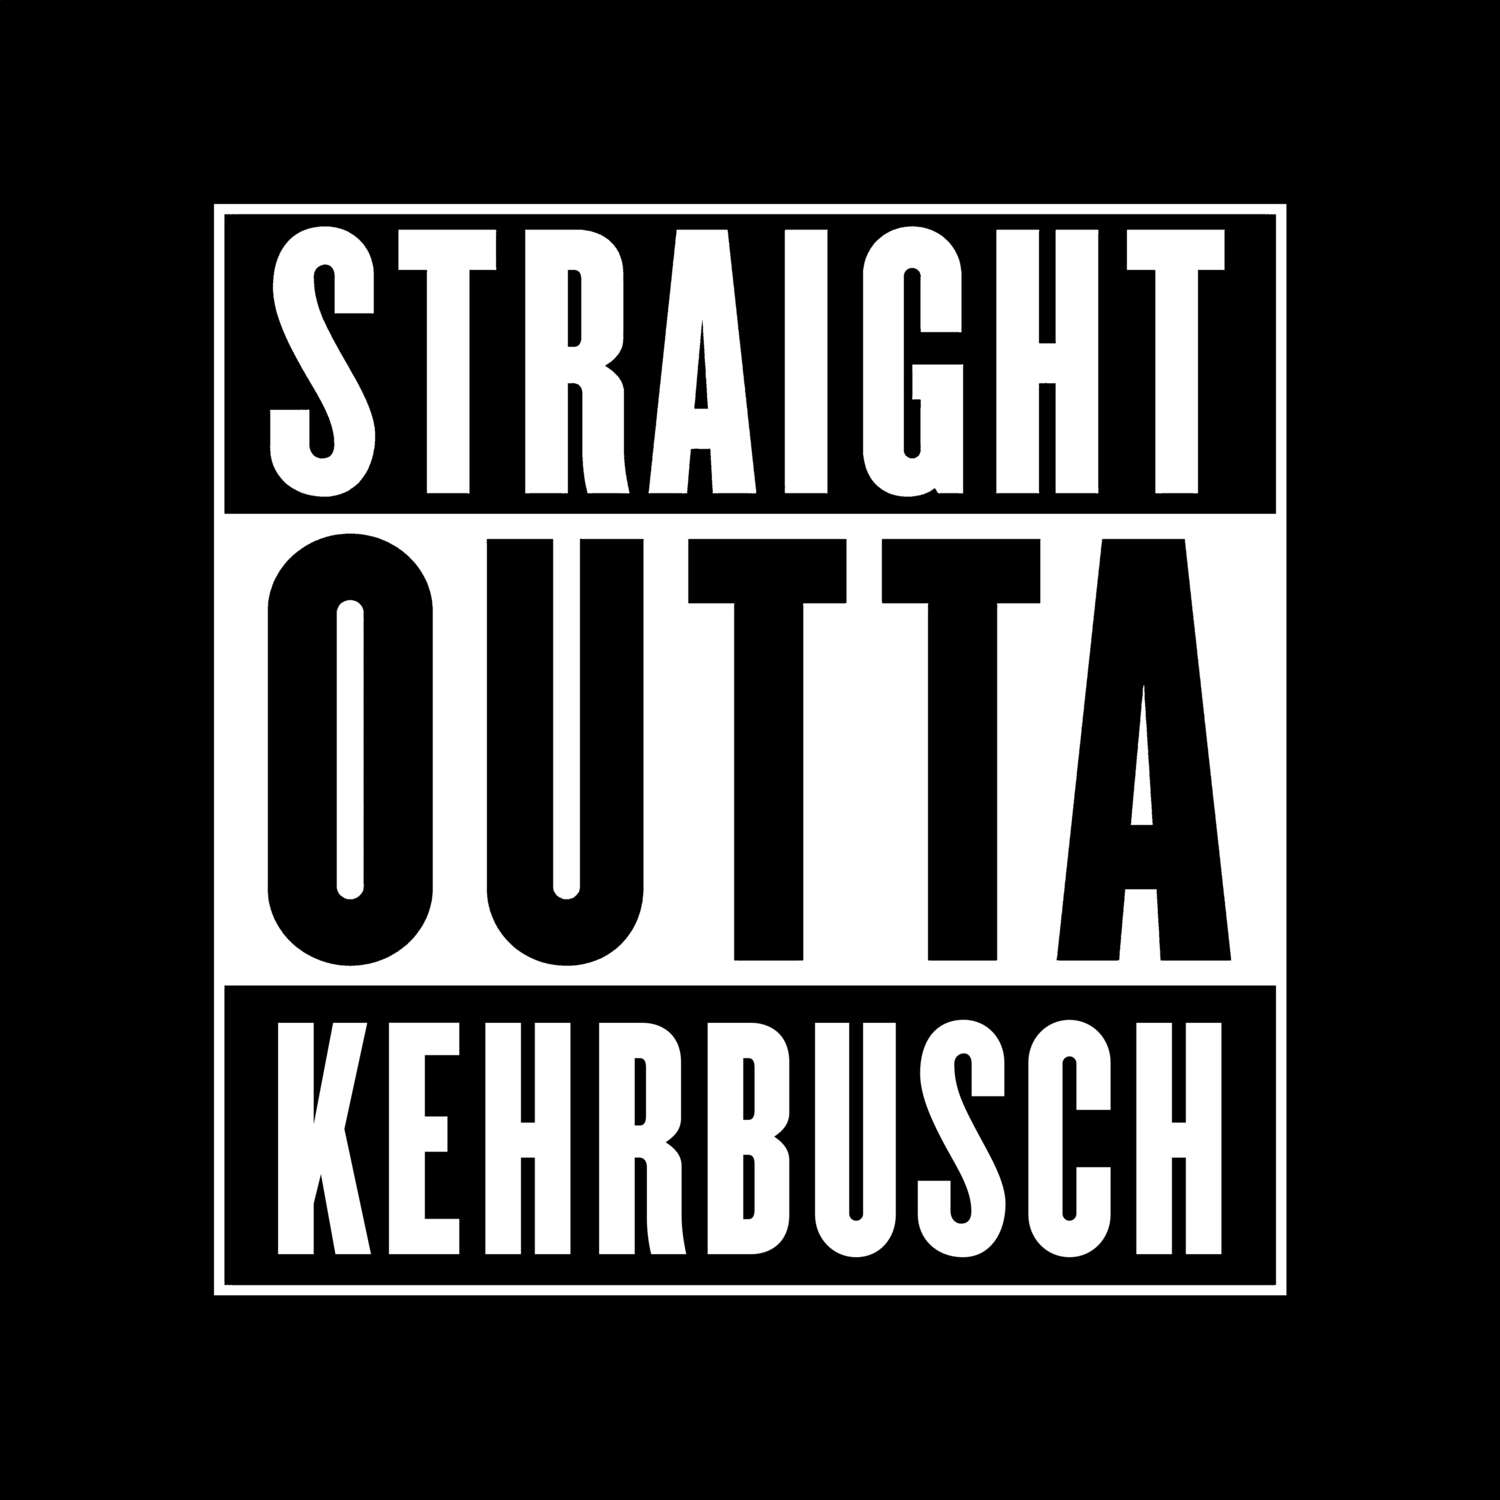 Kehrbusch T-Shirt »Straight Outta«